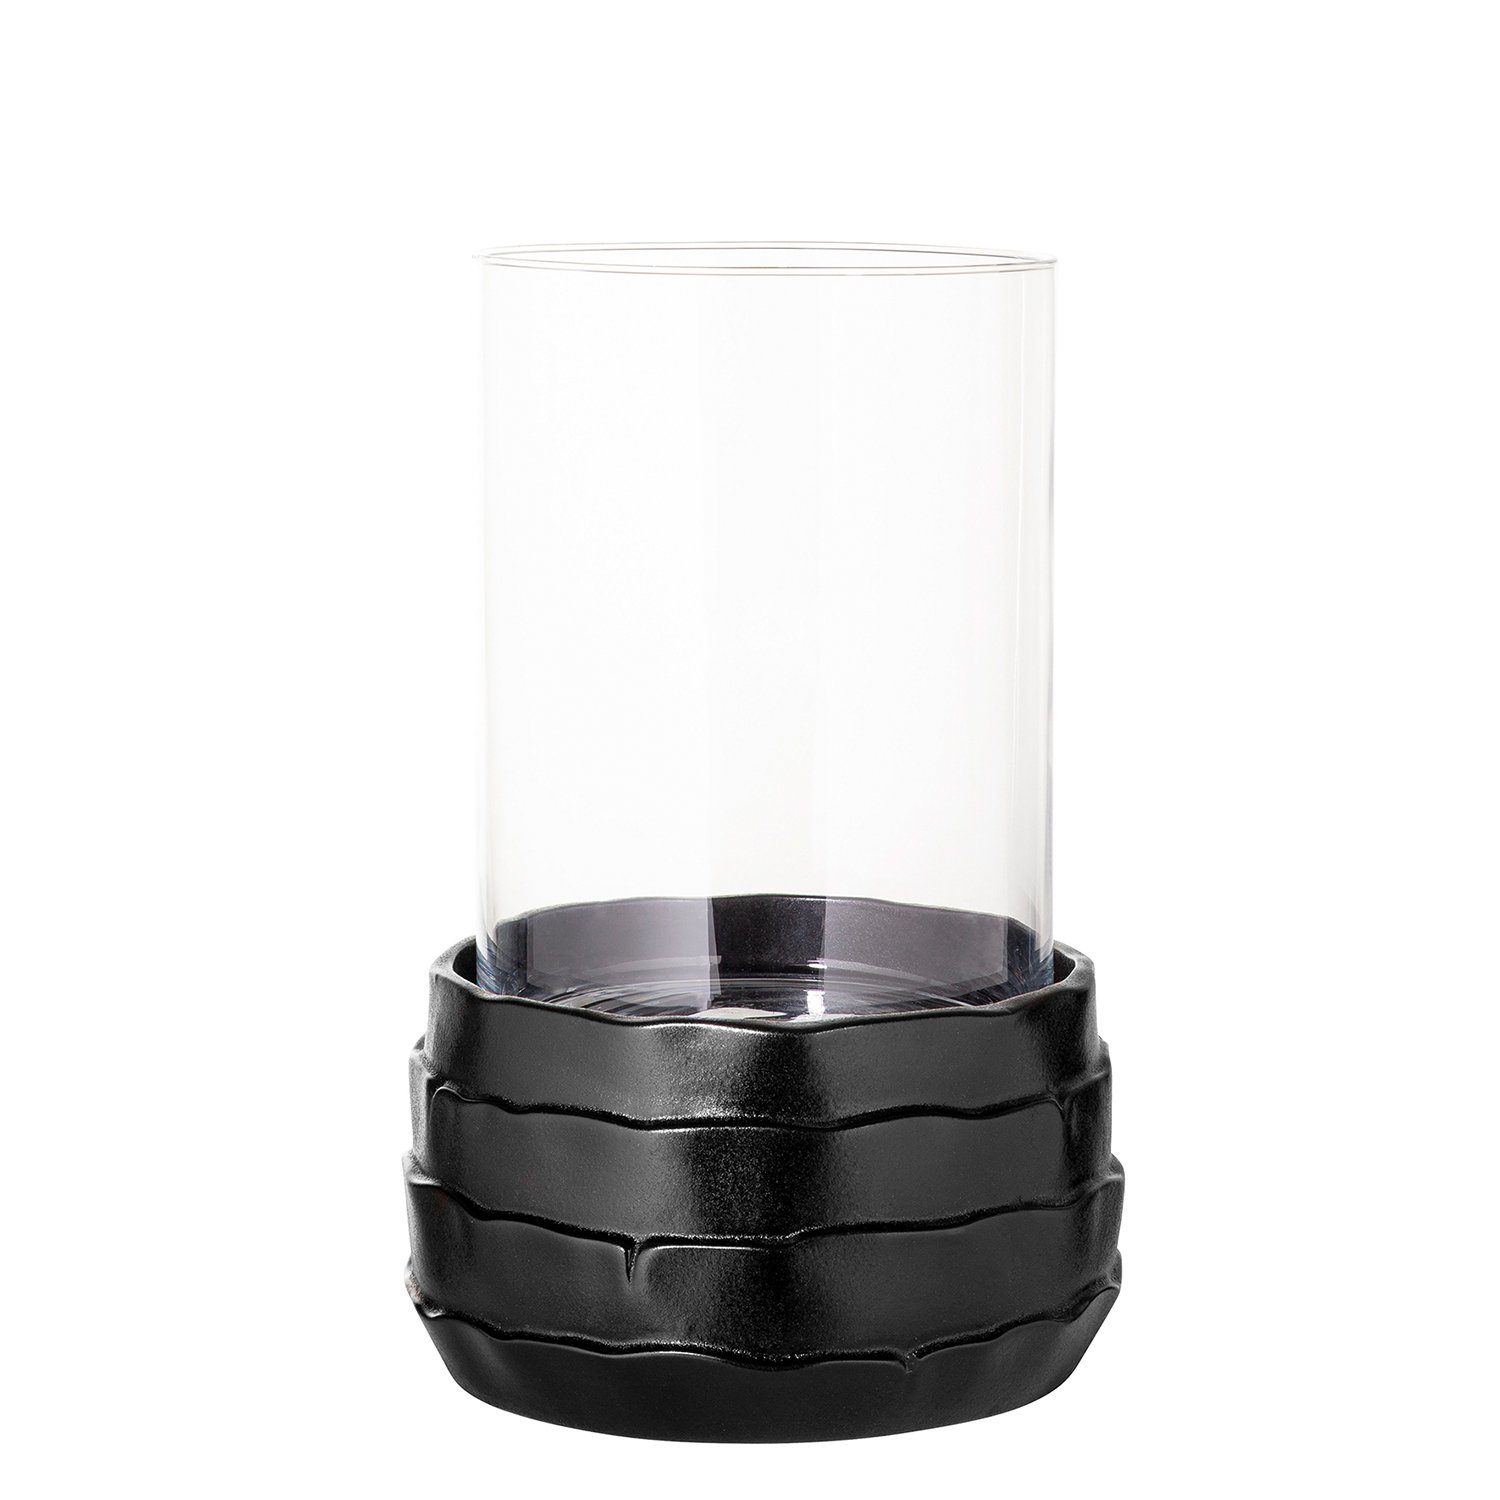 Fink Windlicht Windlicht COCON - schwarz - Keramik - Glas - H.34cm x Ø 25cm (Keramikbasis + Glas), nicht outdoorgeeignet